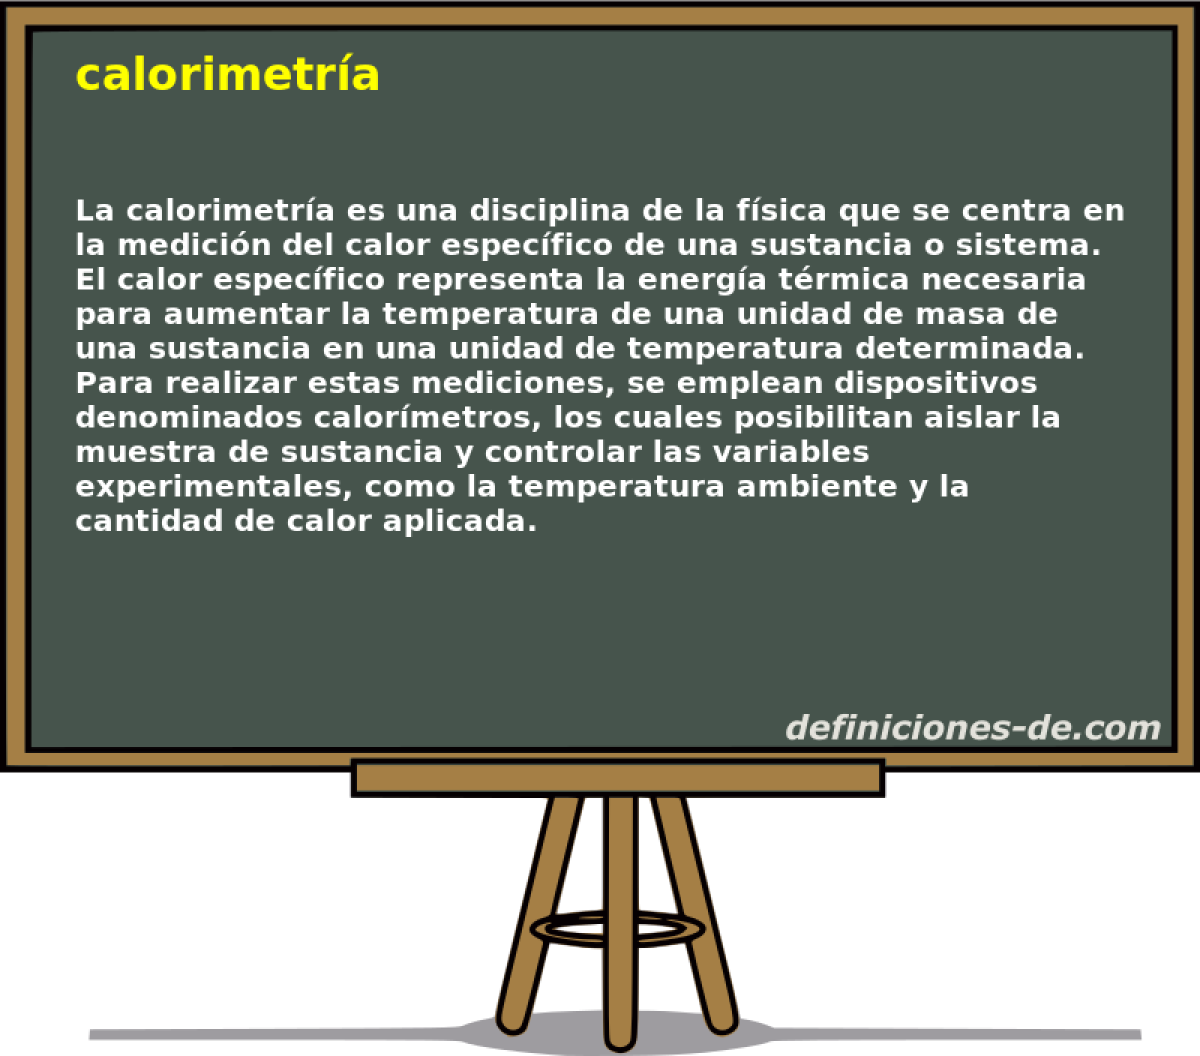 calorimetra 